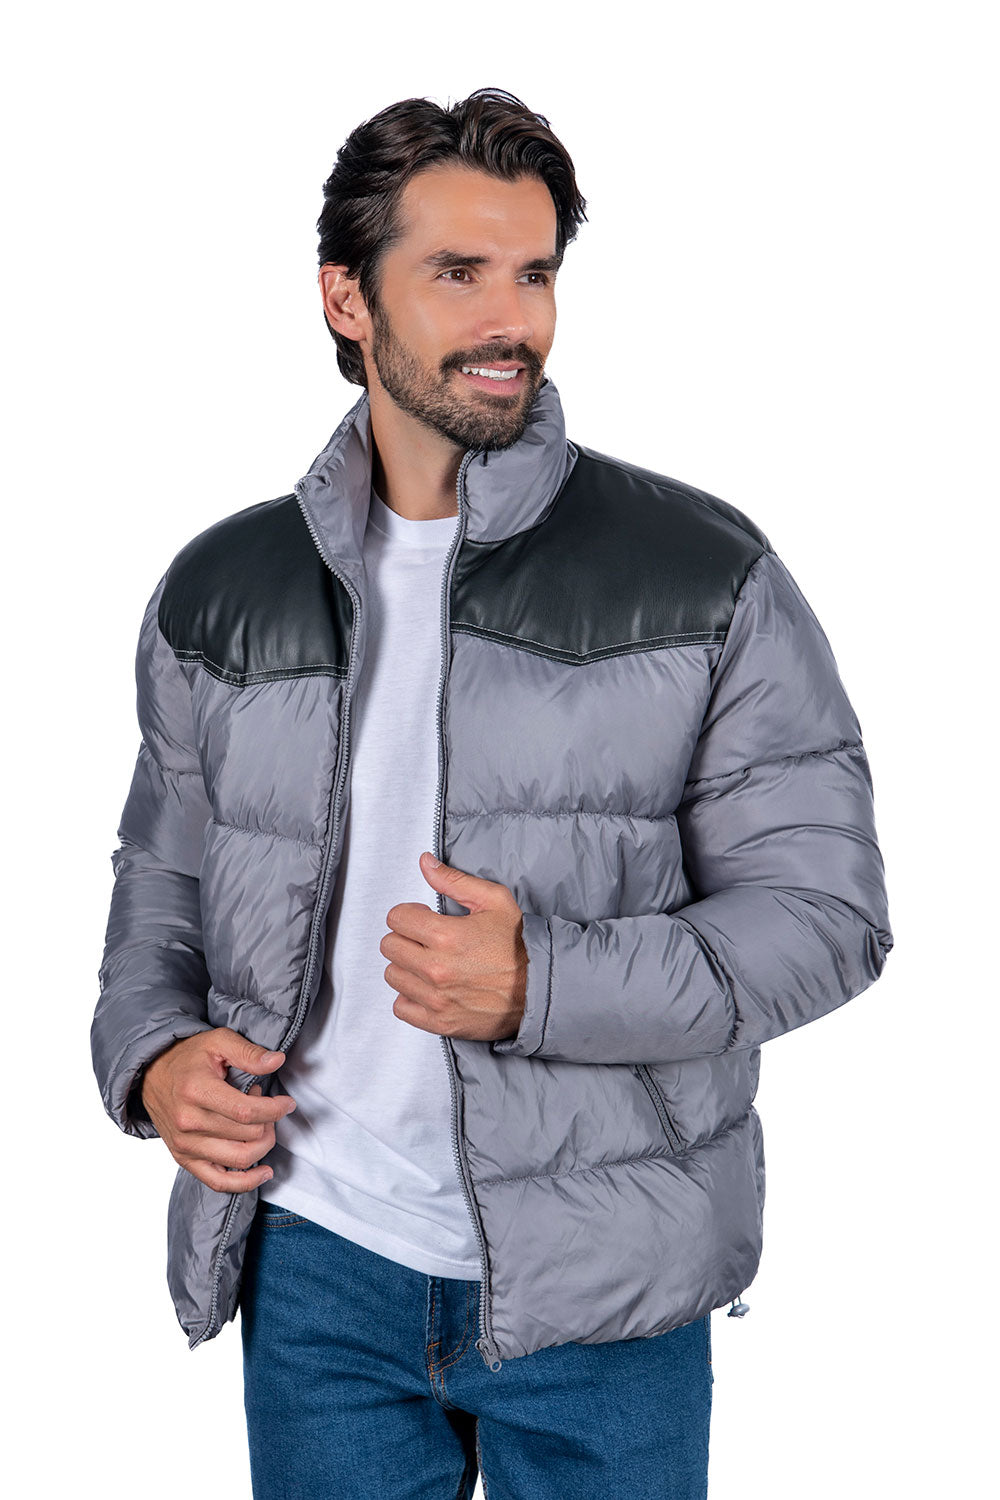 Men's Padded Winter Jackets (S-M-L-XL-XXL / 3-7-7-4-3) 24 pcs